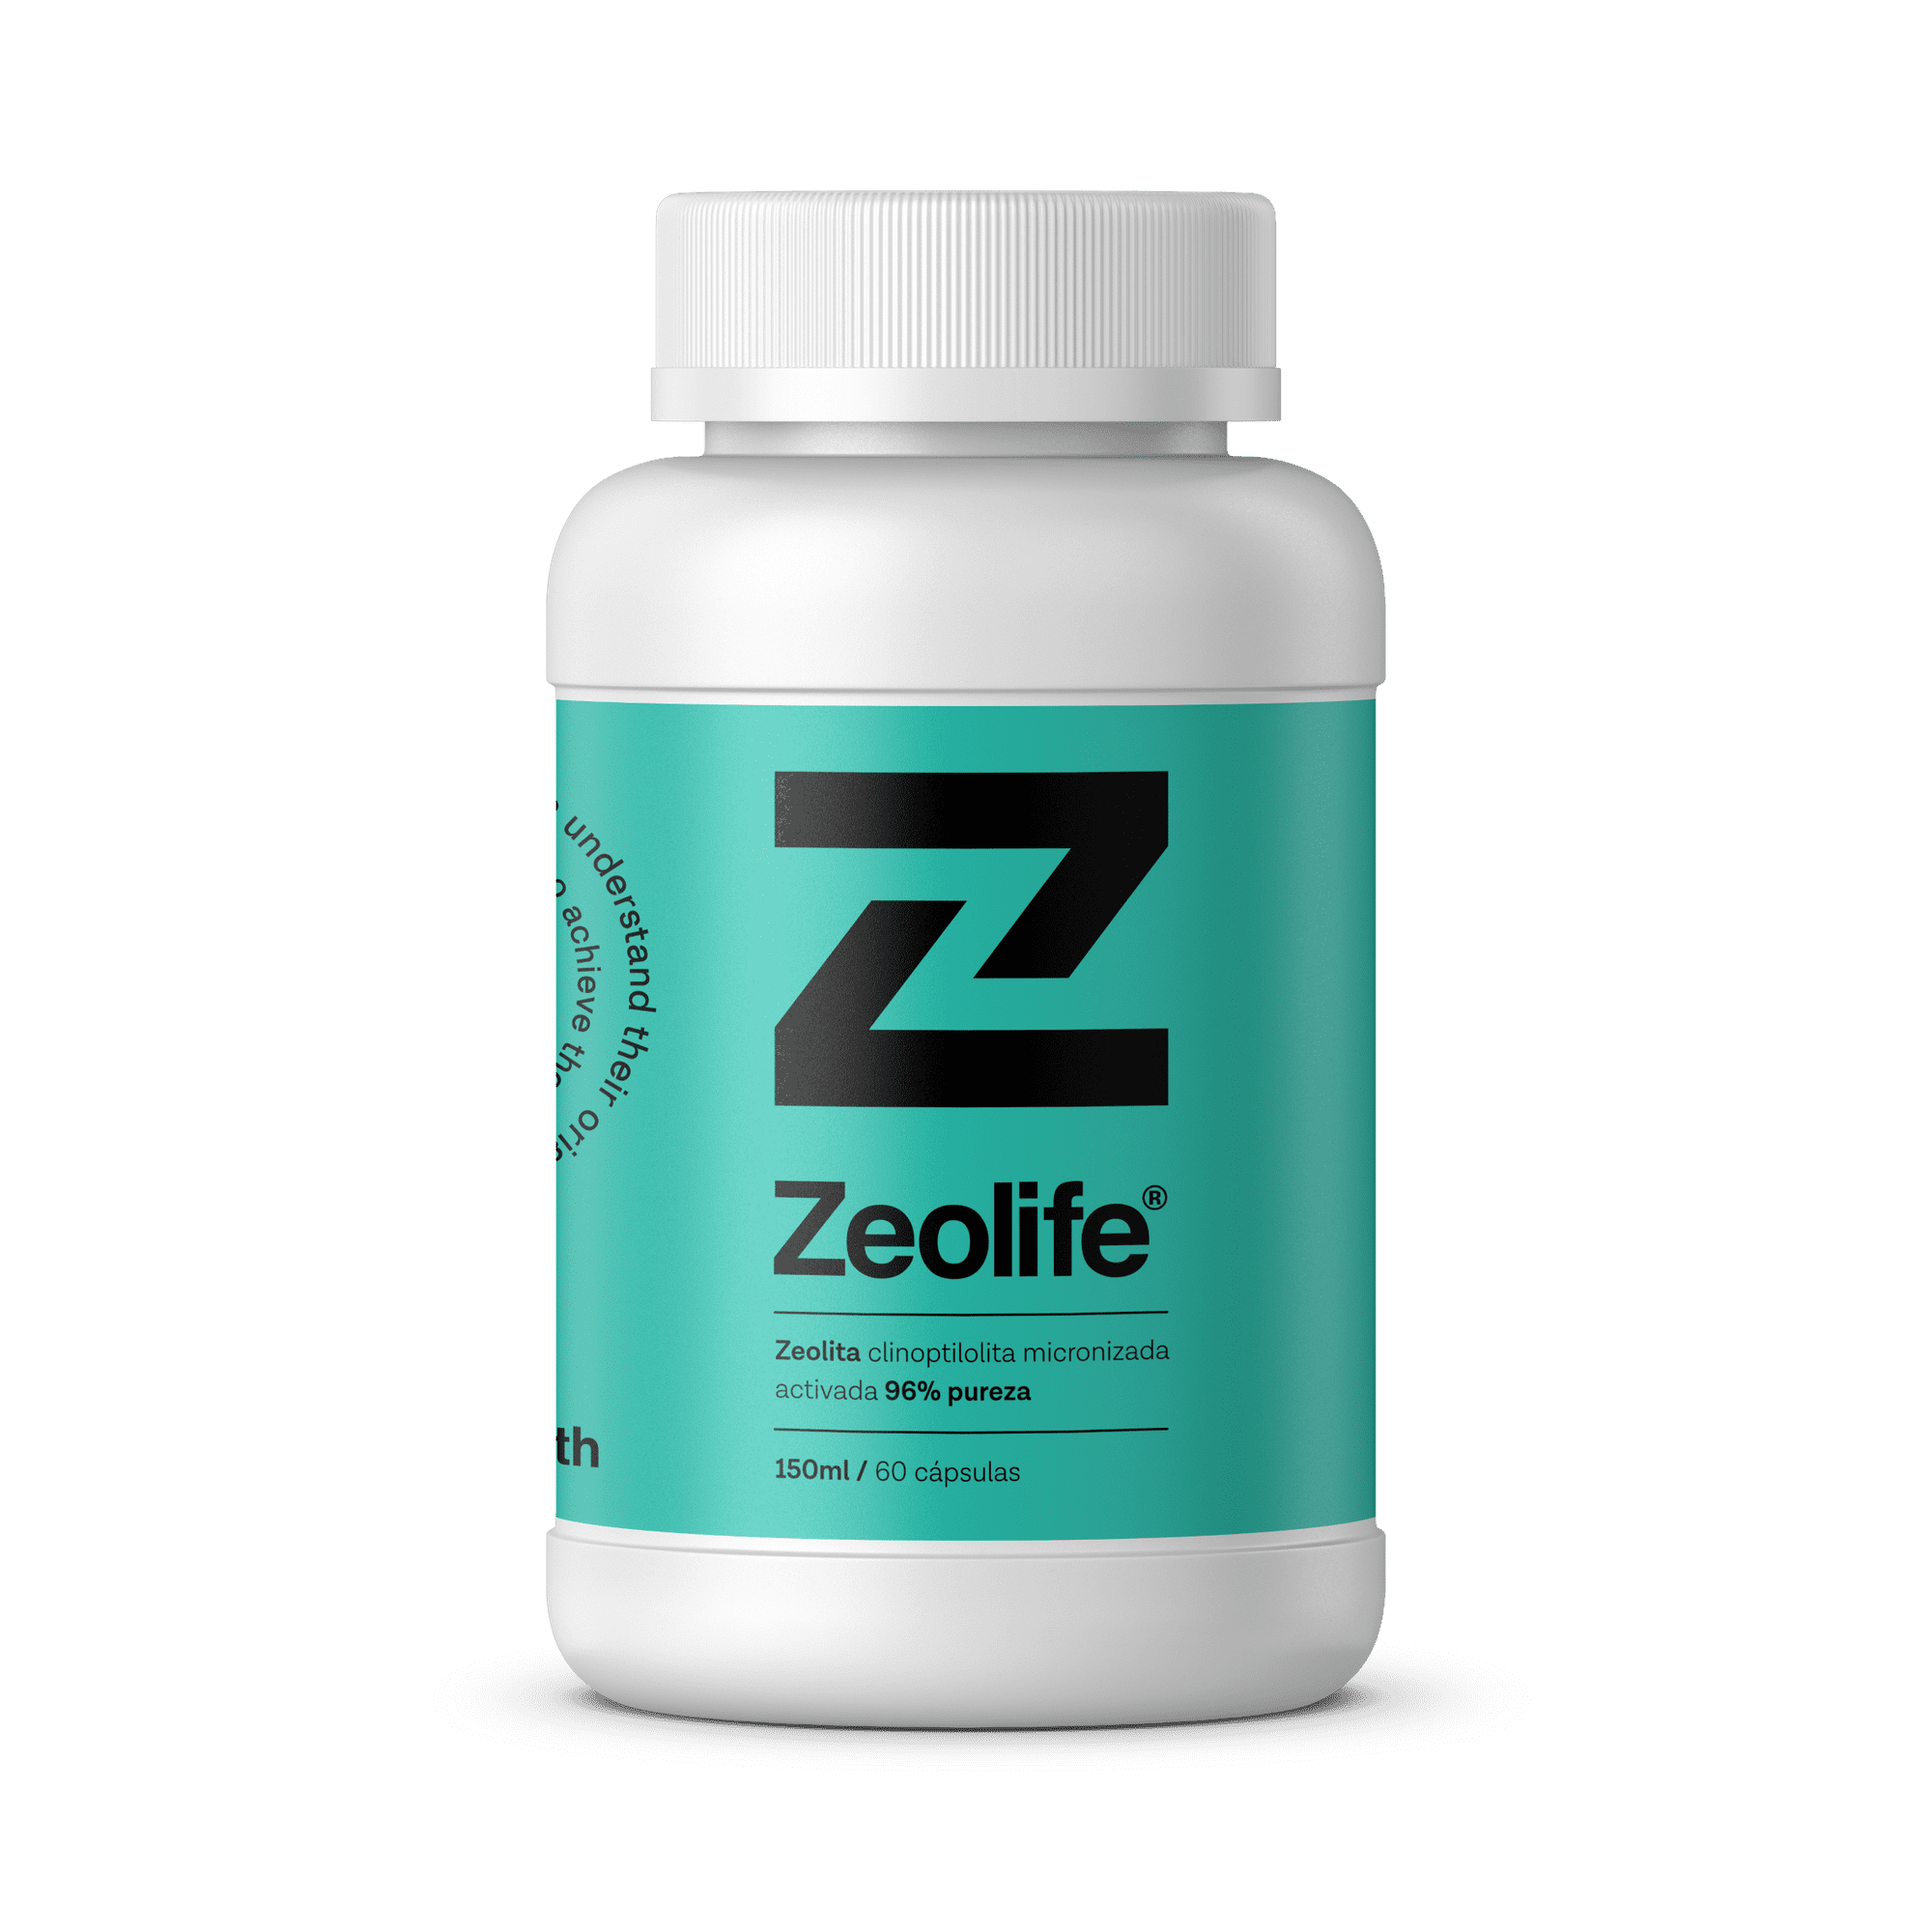 ZEOLIFE ZEOLITA CLINOPTILOLITA 96% PUREZA 1 FRASCO ANCIENT HEALTH ZEOLITA